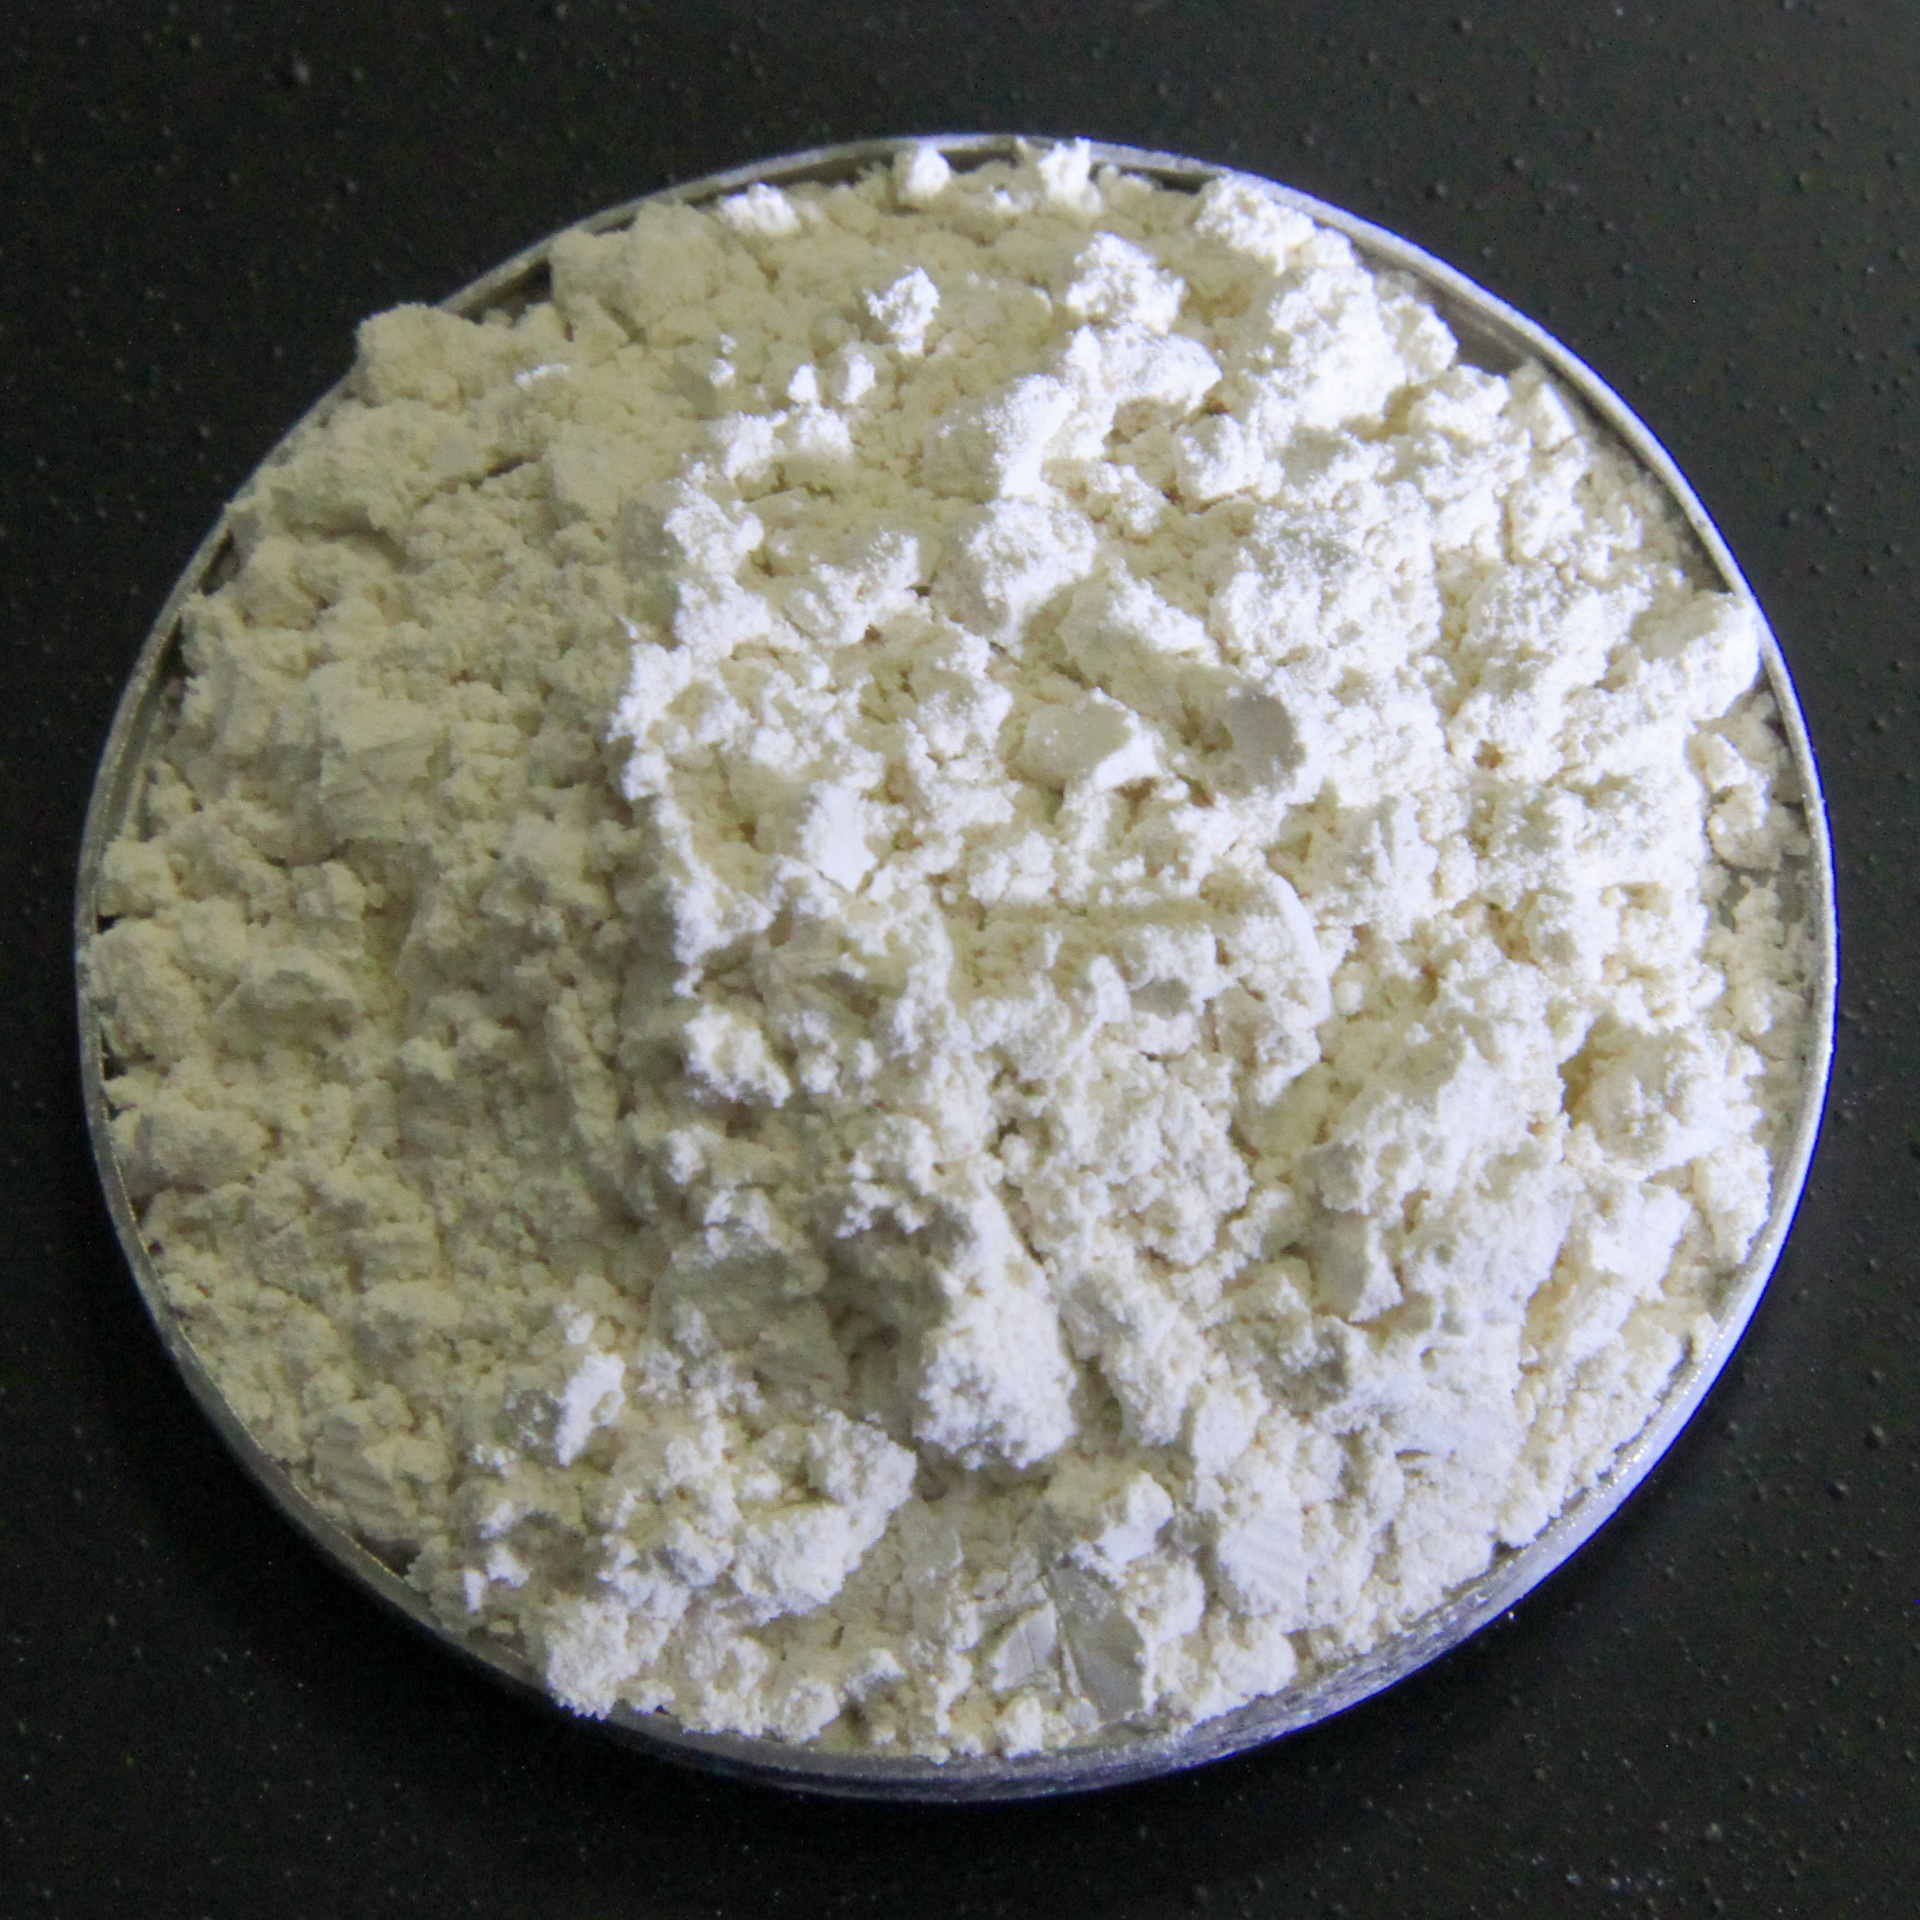 Lanthanum aluminate-calcium-titanate solid solutions (ALTK)